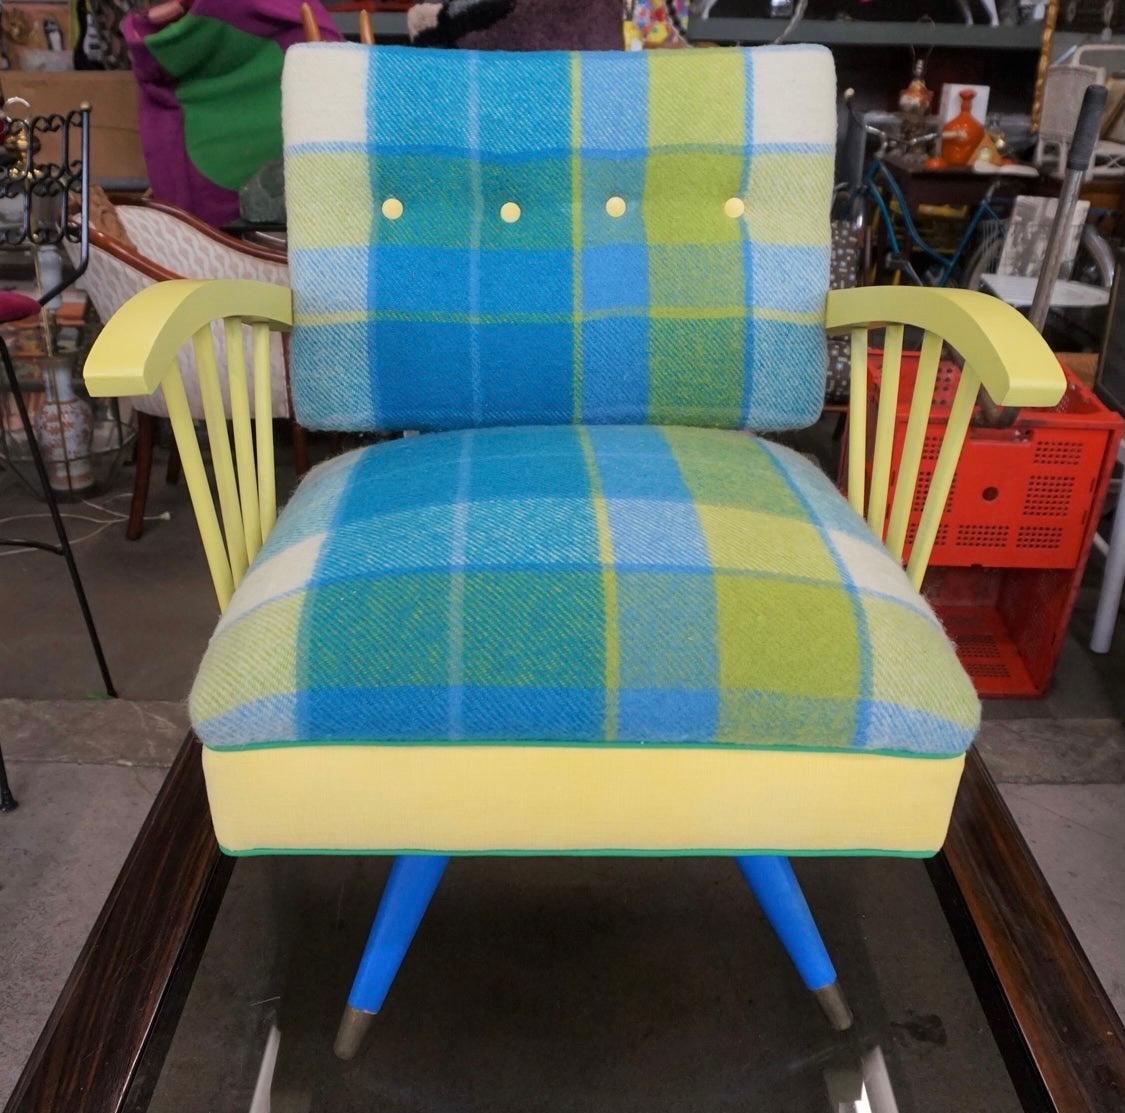 Dieser Werkstattstuhl aus den 1950er Jahren wurde mit einem Pendleton-Wollstoff für die Sitzfläche und die Rückenlehne sowie einer Kelly-grünen Paspel und einem üppigen gelben Samt neu gepolstert. Der Rahmen hat einige kleinere altersgemäße